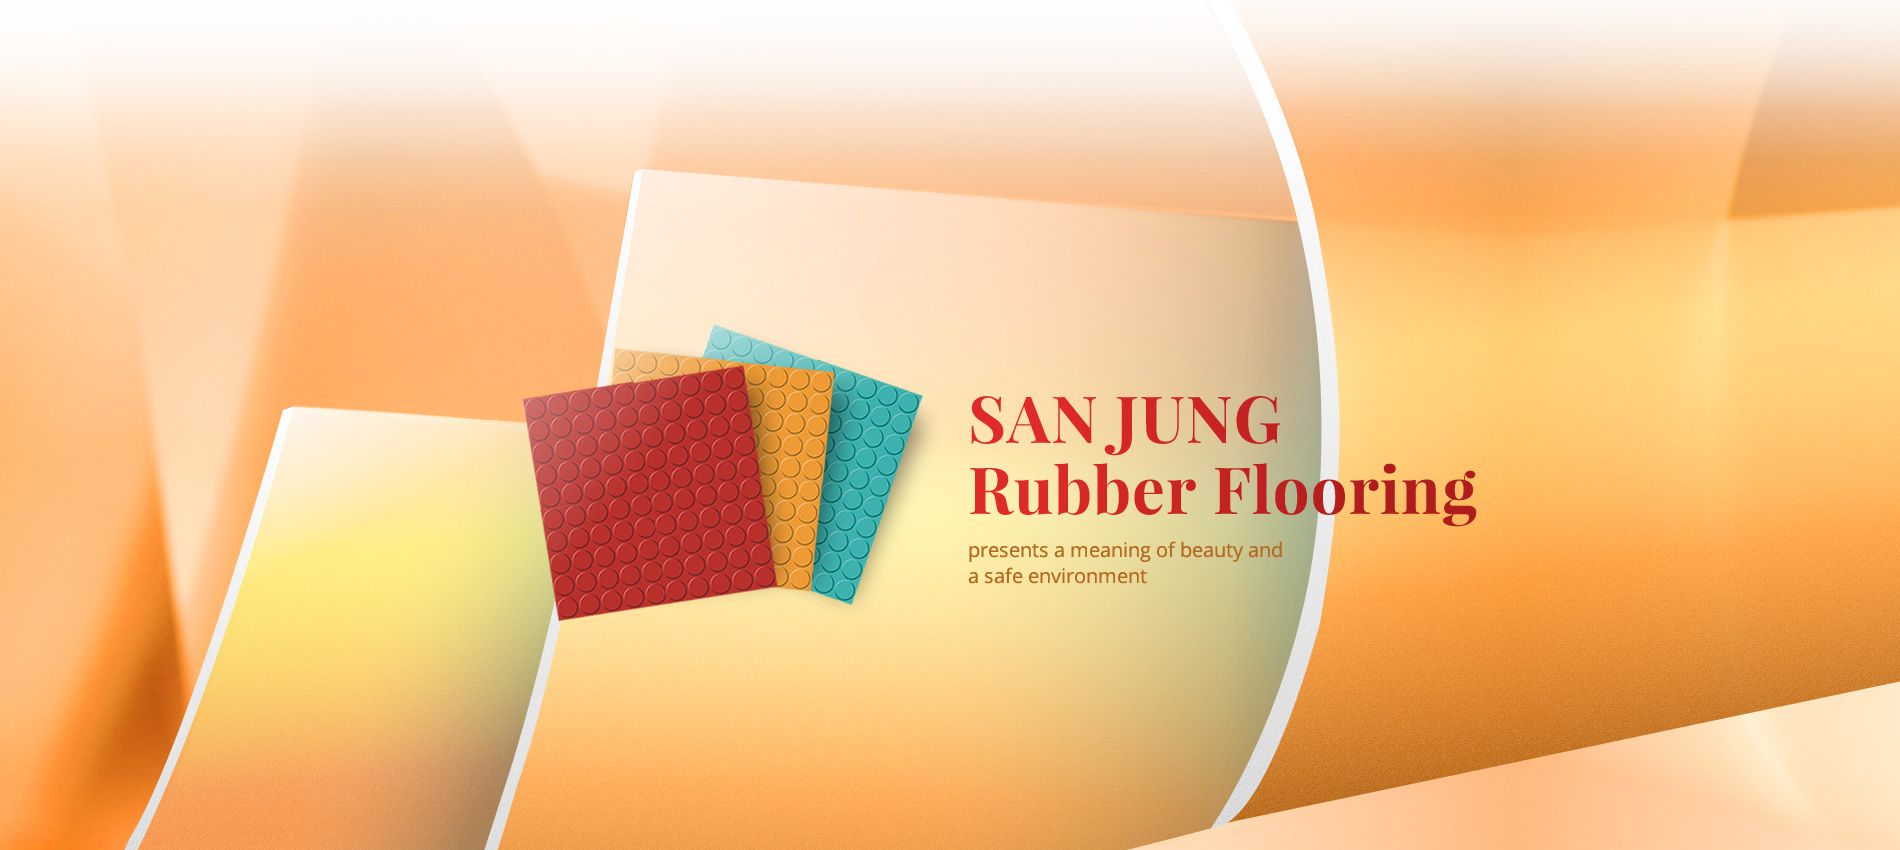 SAN JUNG Rubber Flooring